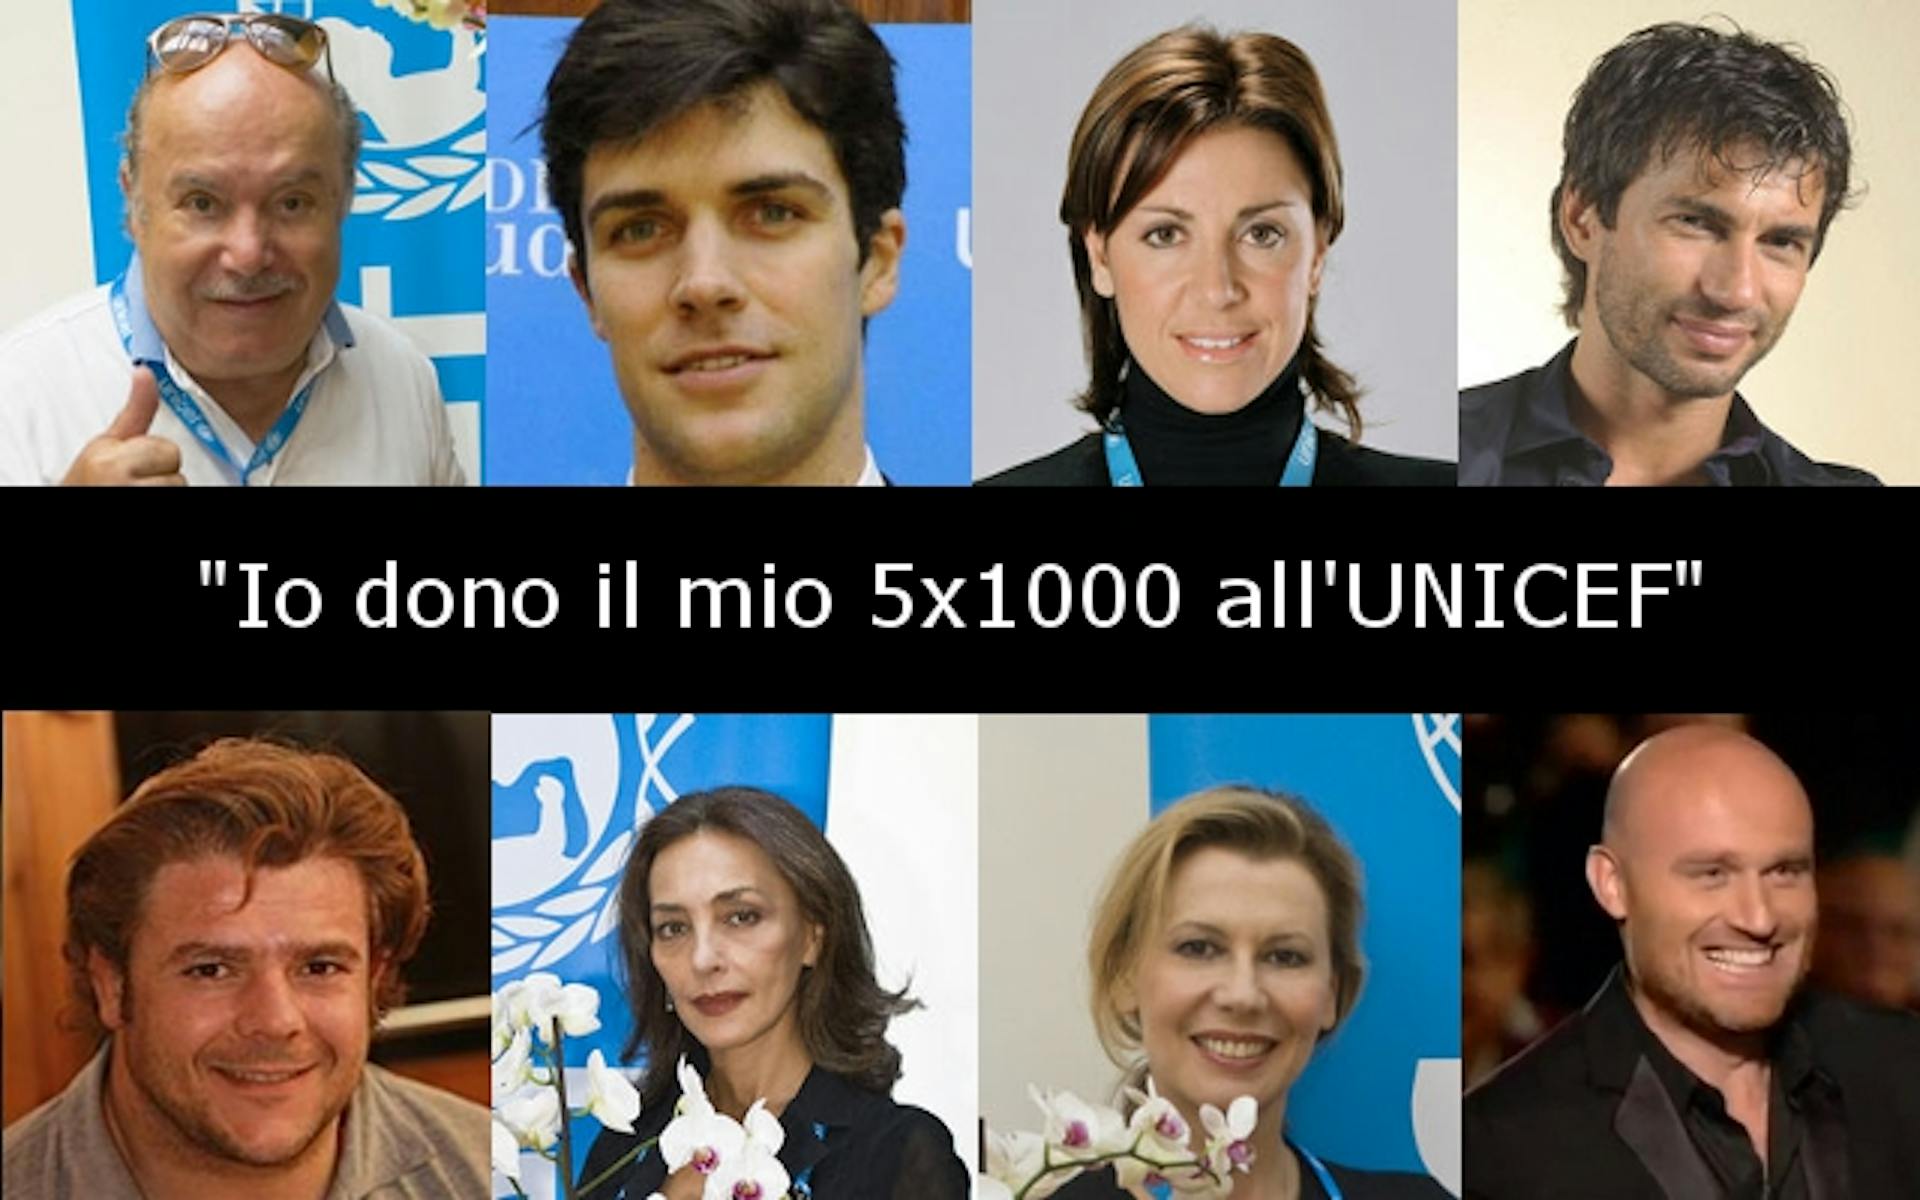 Ambasciatori e testimonial che donano il 5x1000 all'UNICEF